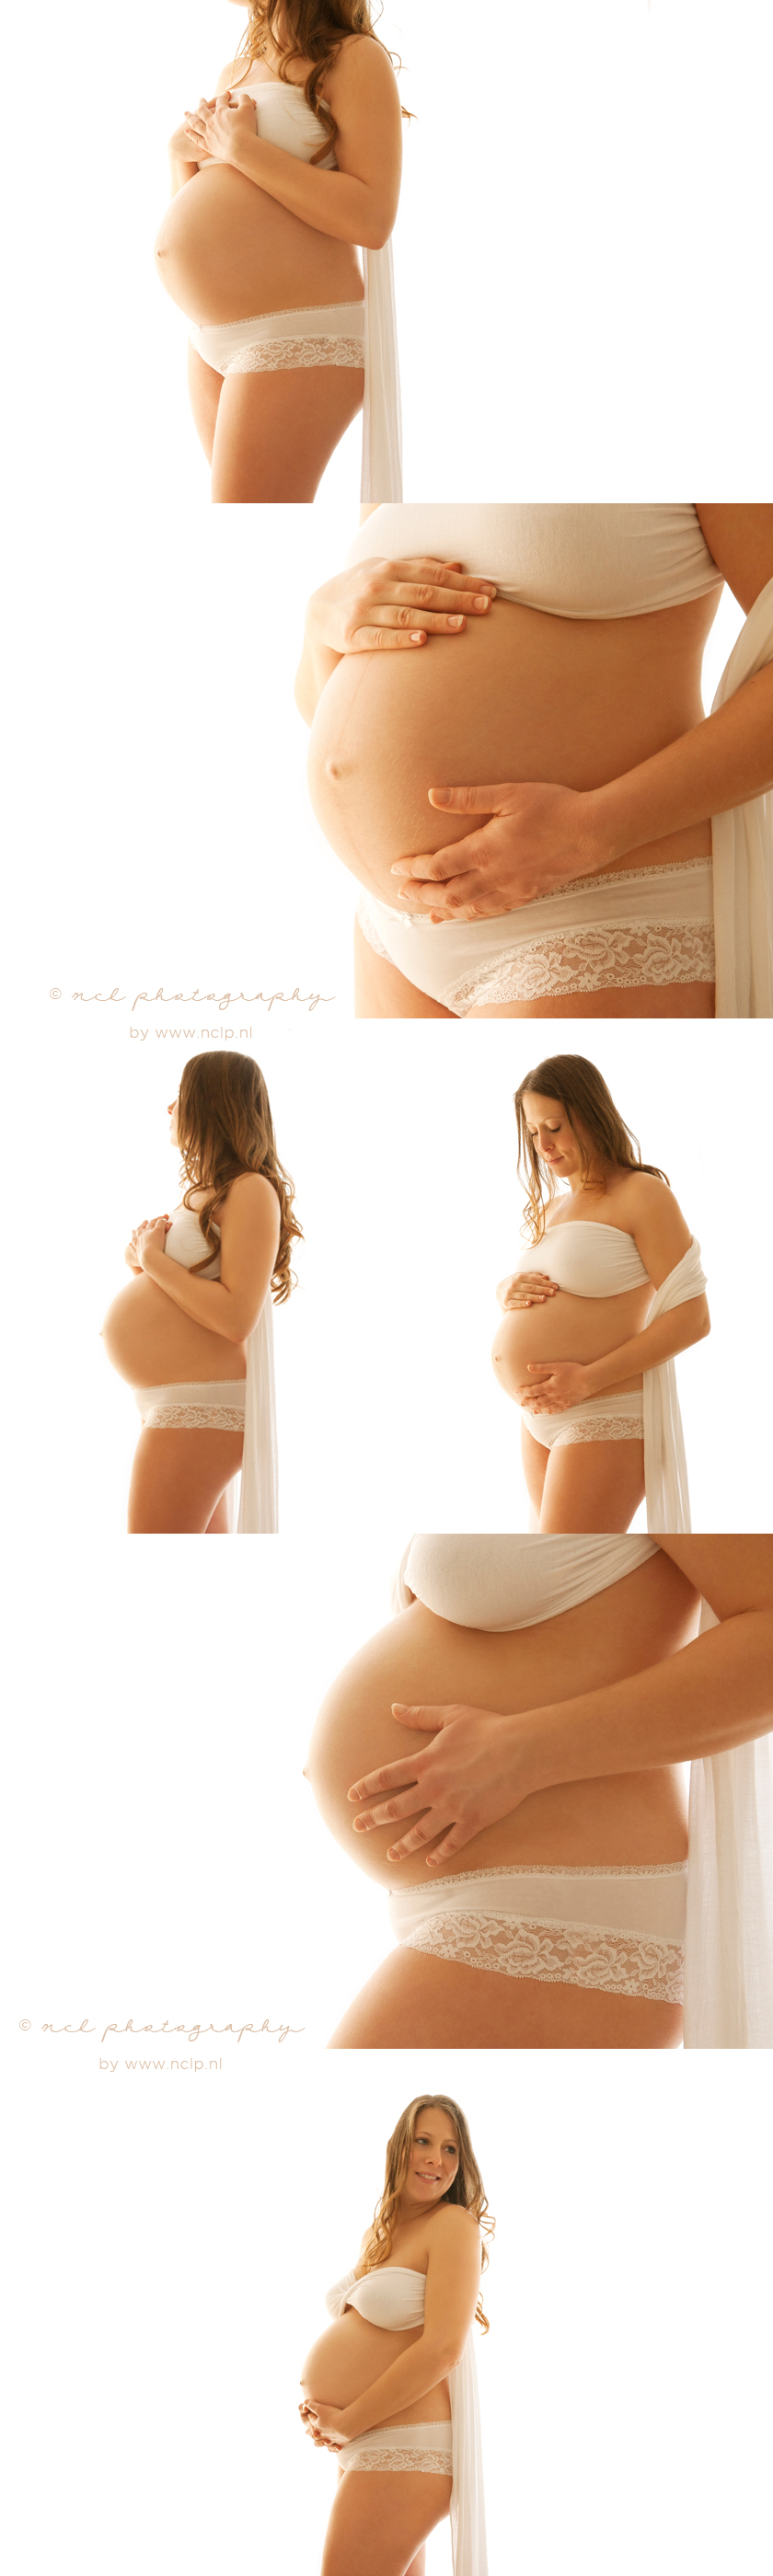 NCL Photography-amsterdam-maternity-blog-zwangerschapsfotografie-018